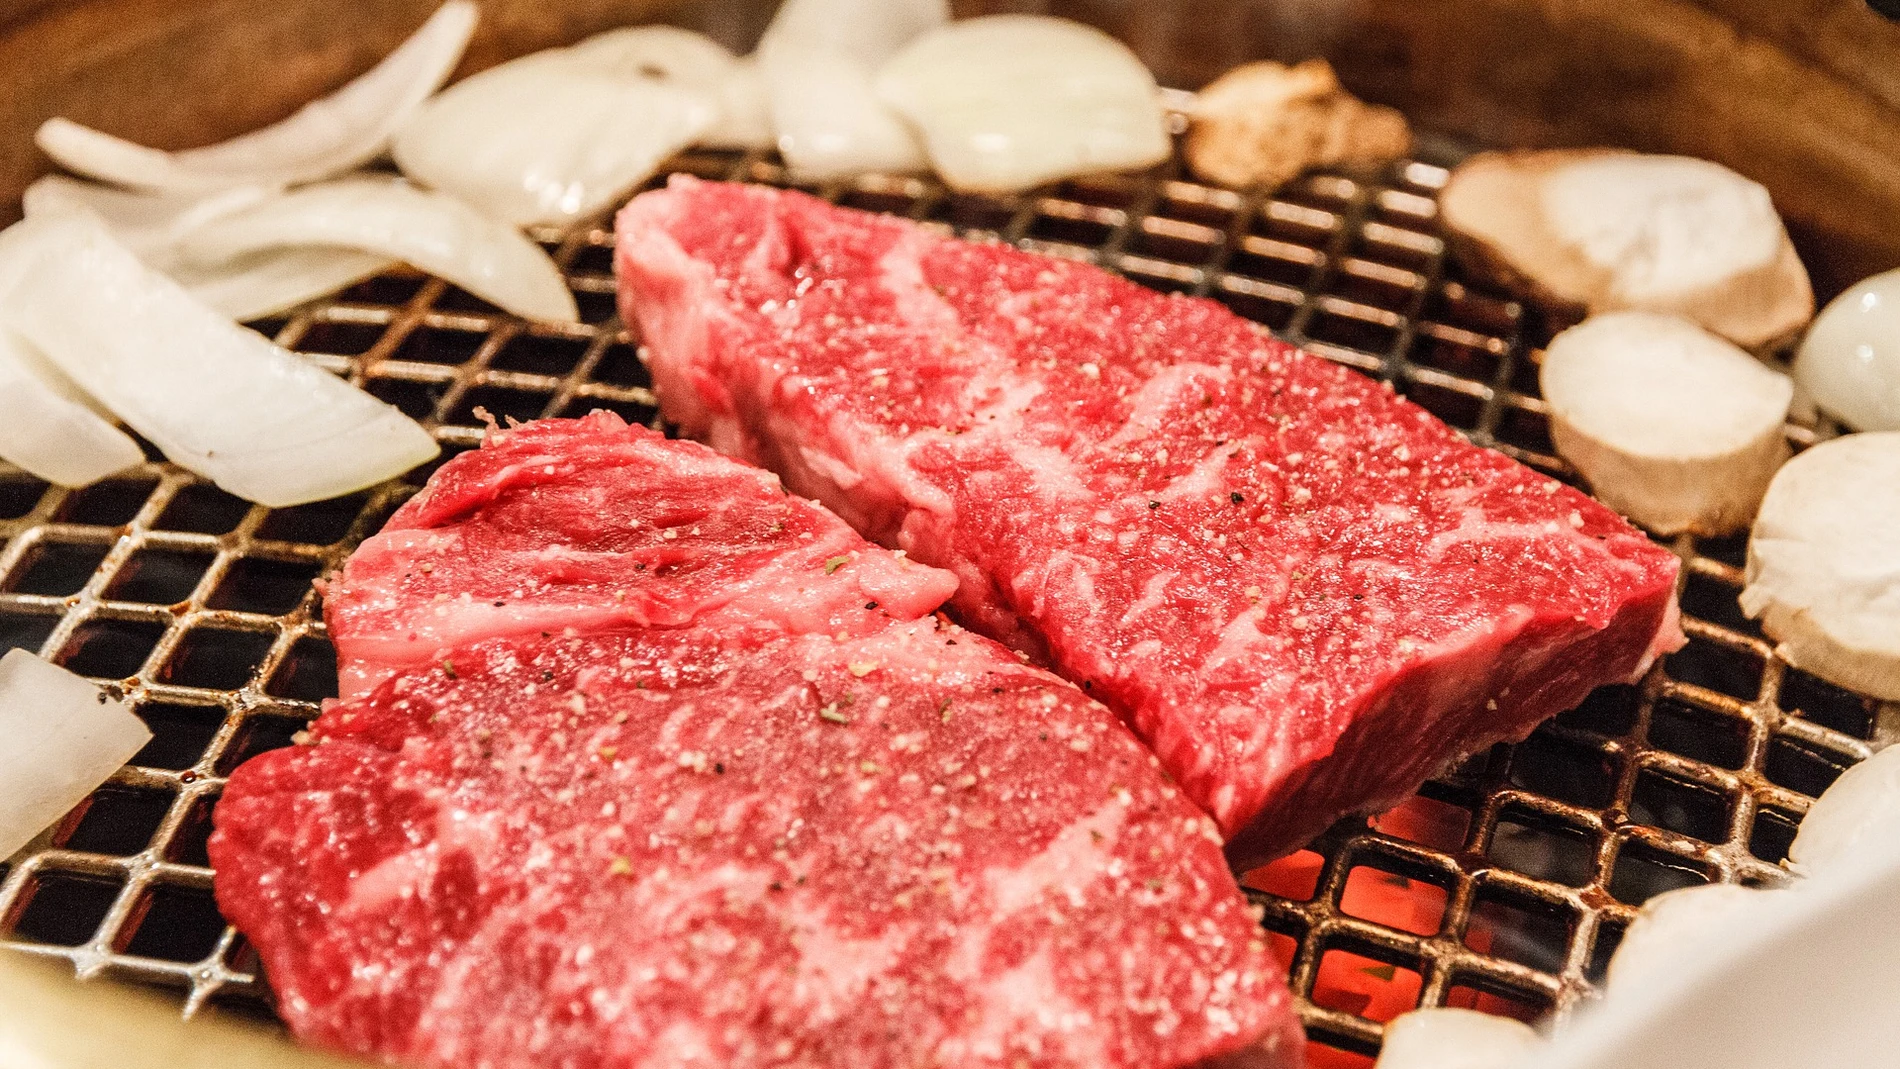 La carne de Kobe no necesita de adornos para potenciar su sabor exquisito.